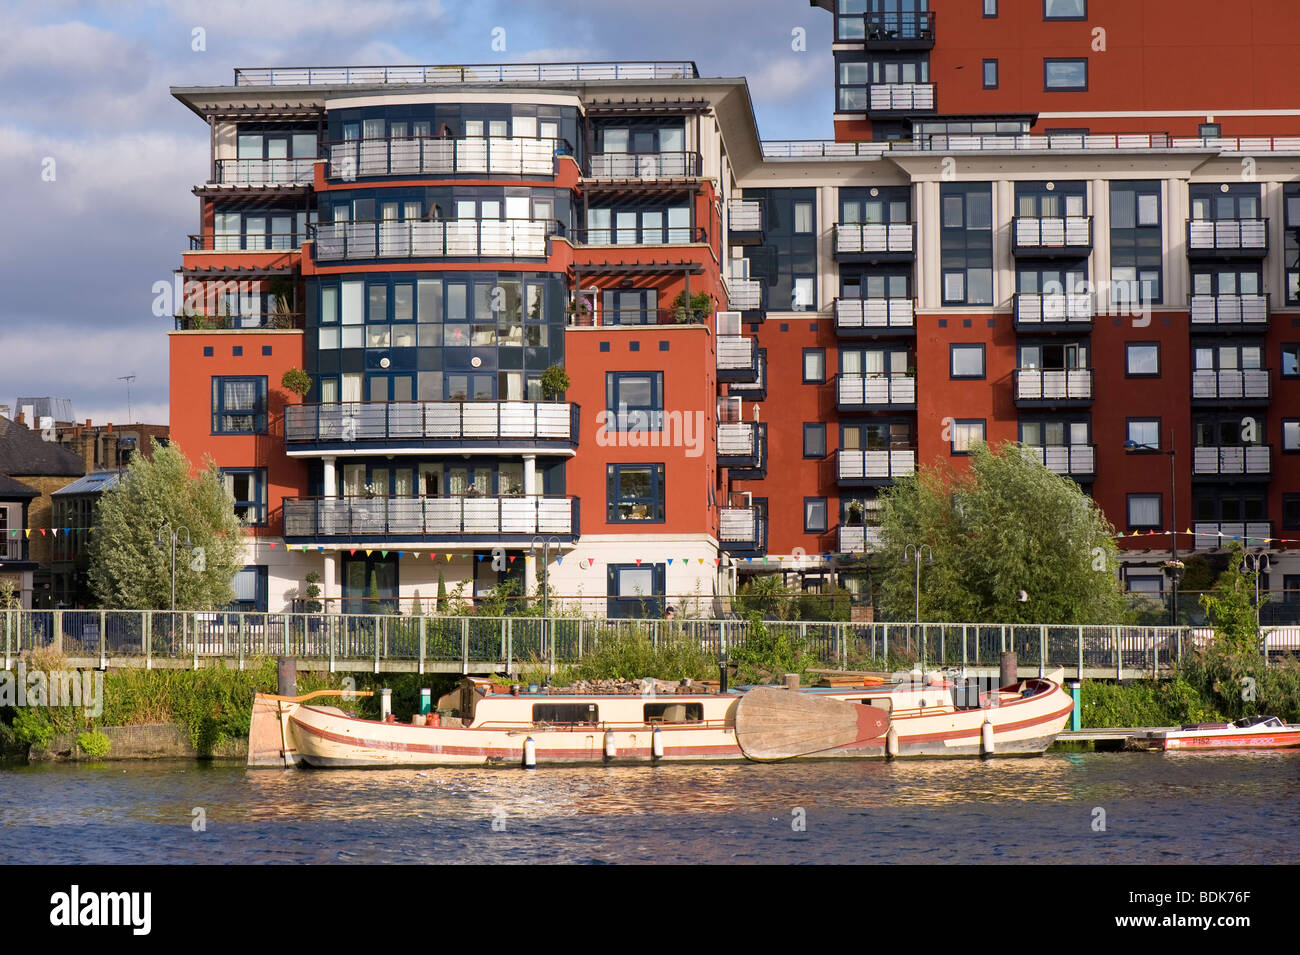 Quai de la charte de développement résidentiel donnant sur la rivière Thames, Kingston upon Thames, Surrey, Royaume-Uni Banque D'Images